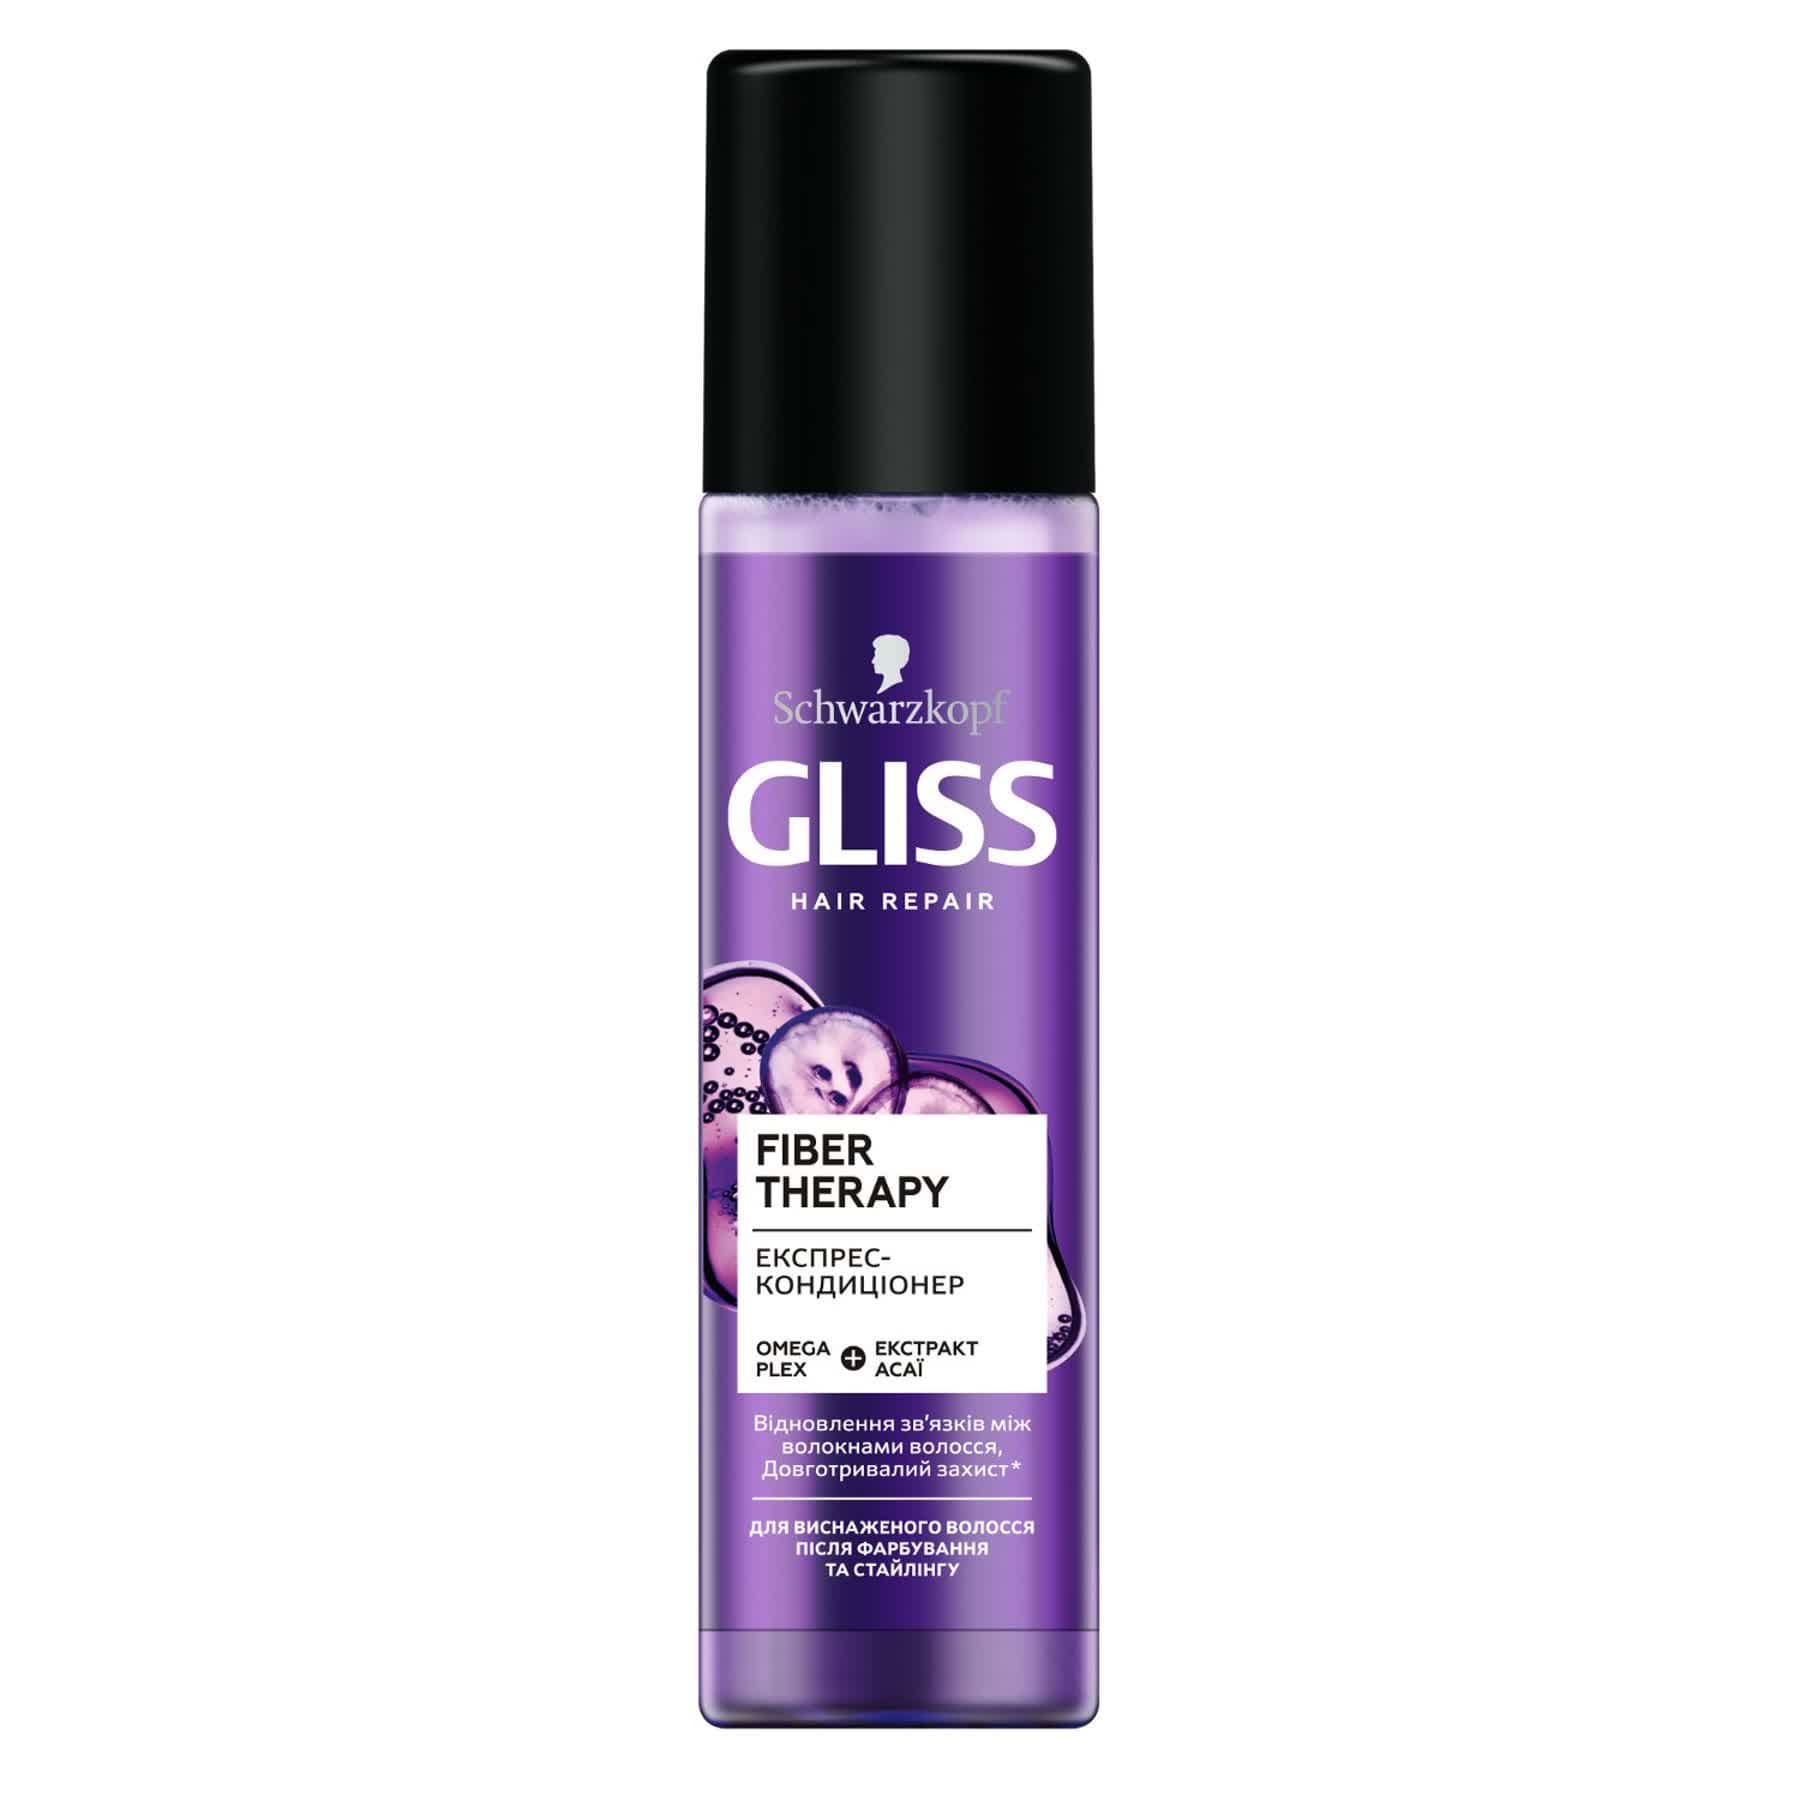 Экспресс-кондиционер GLISS Fiber Therapy для истощенных волос после окрашивания и стайлинга, 200 мл.